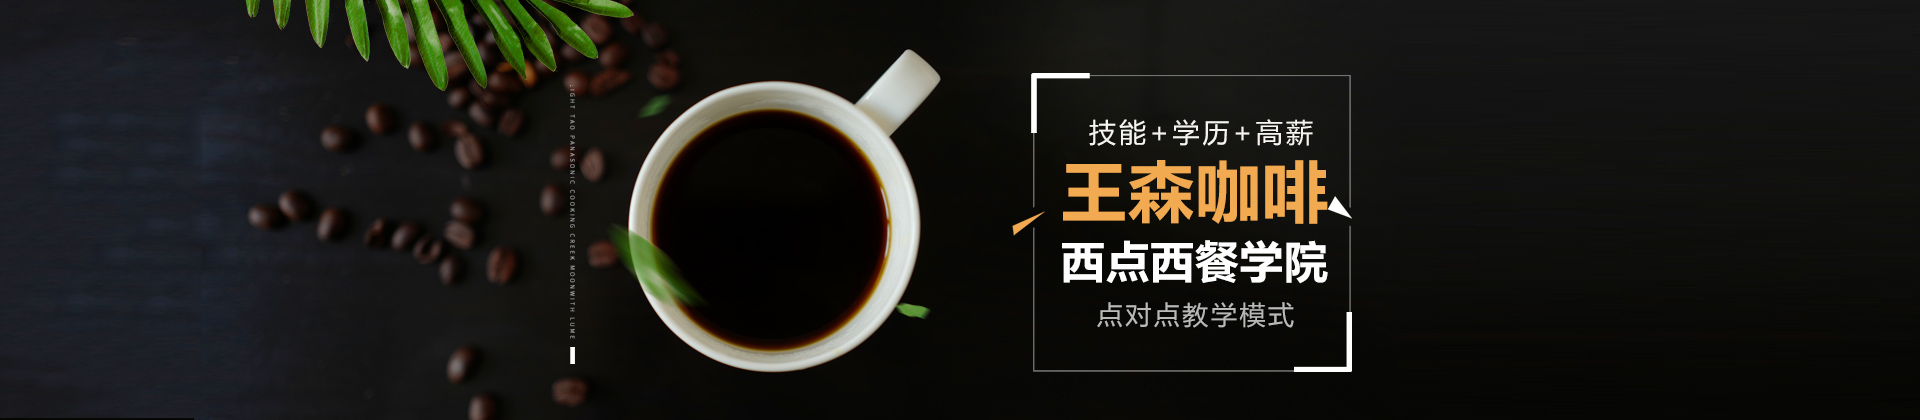 上海王森咖啡西点西餐学校